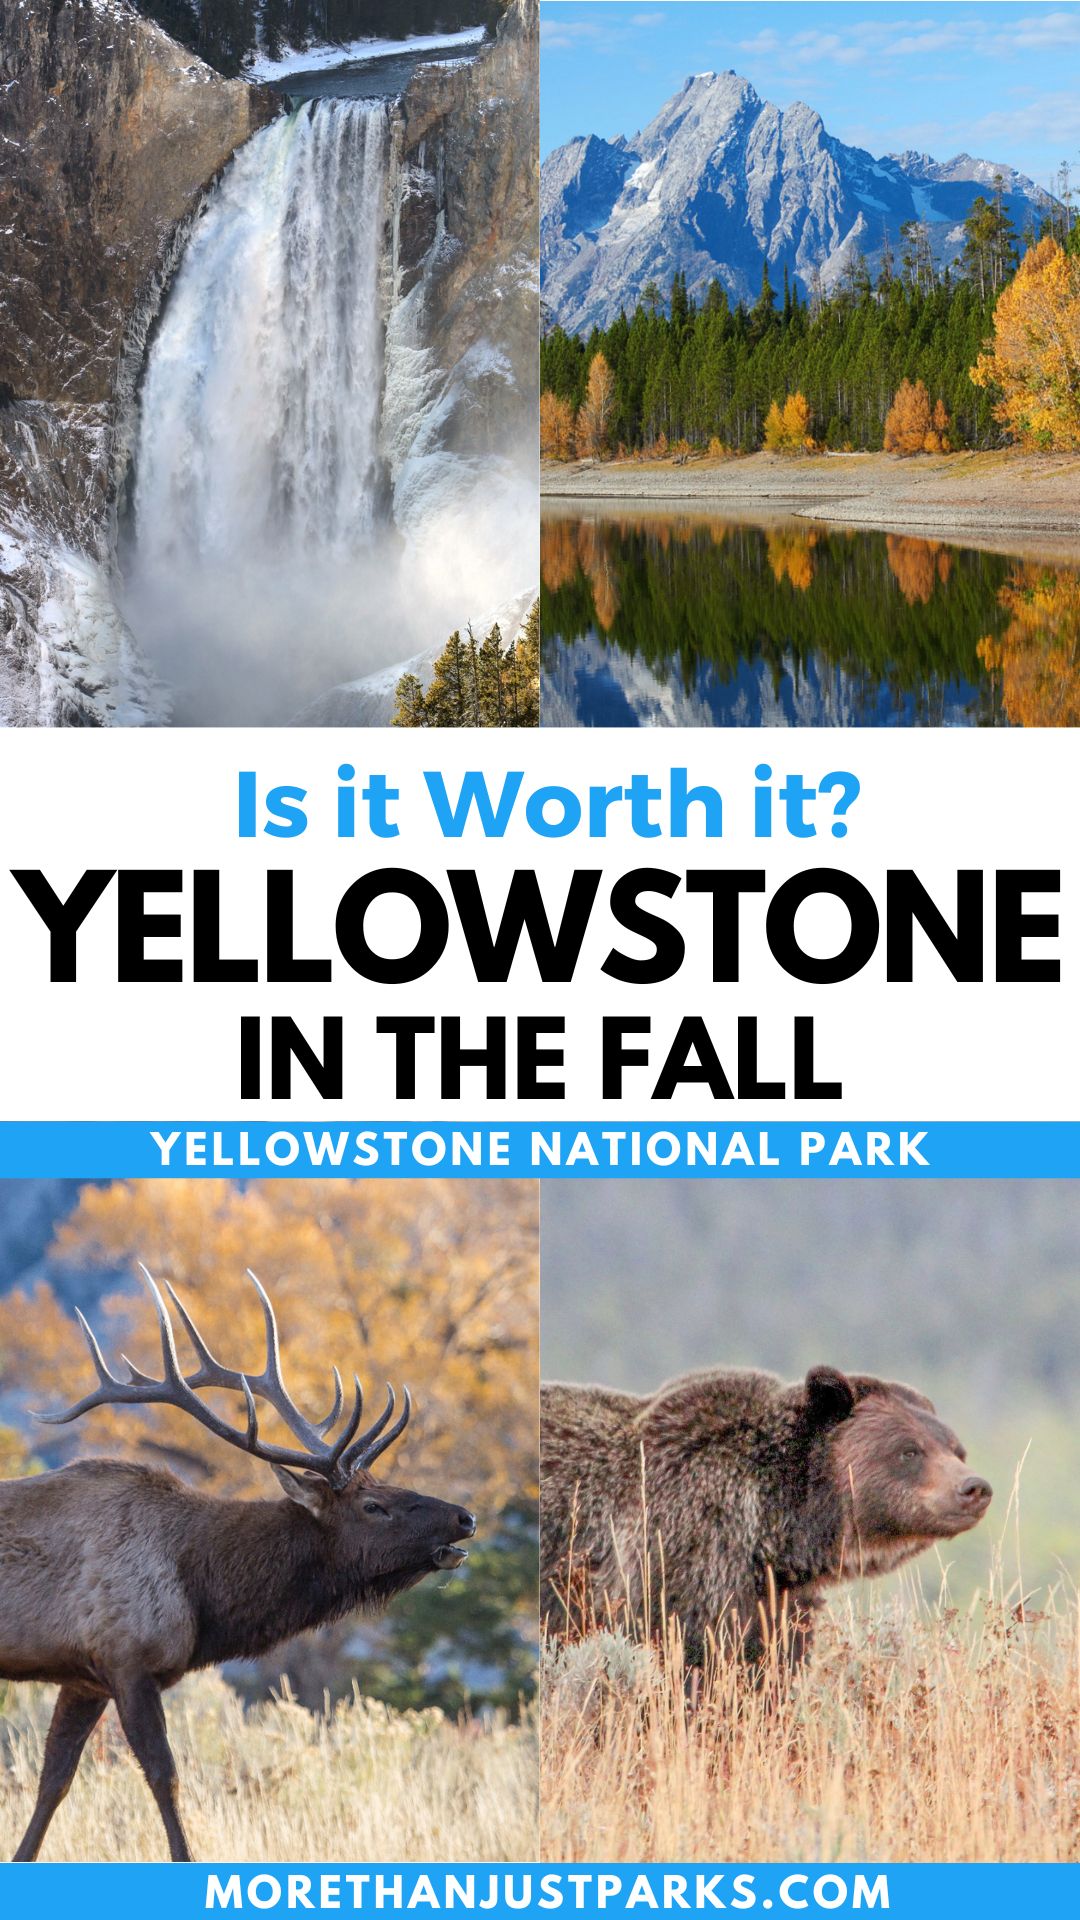 Yellowstone in the fall